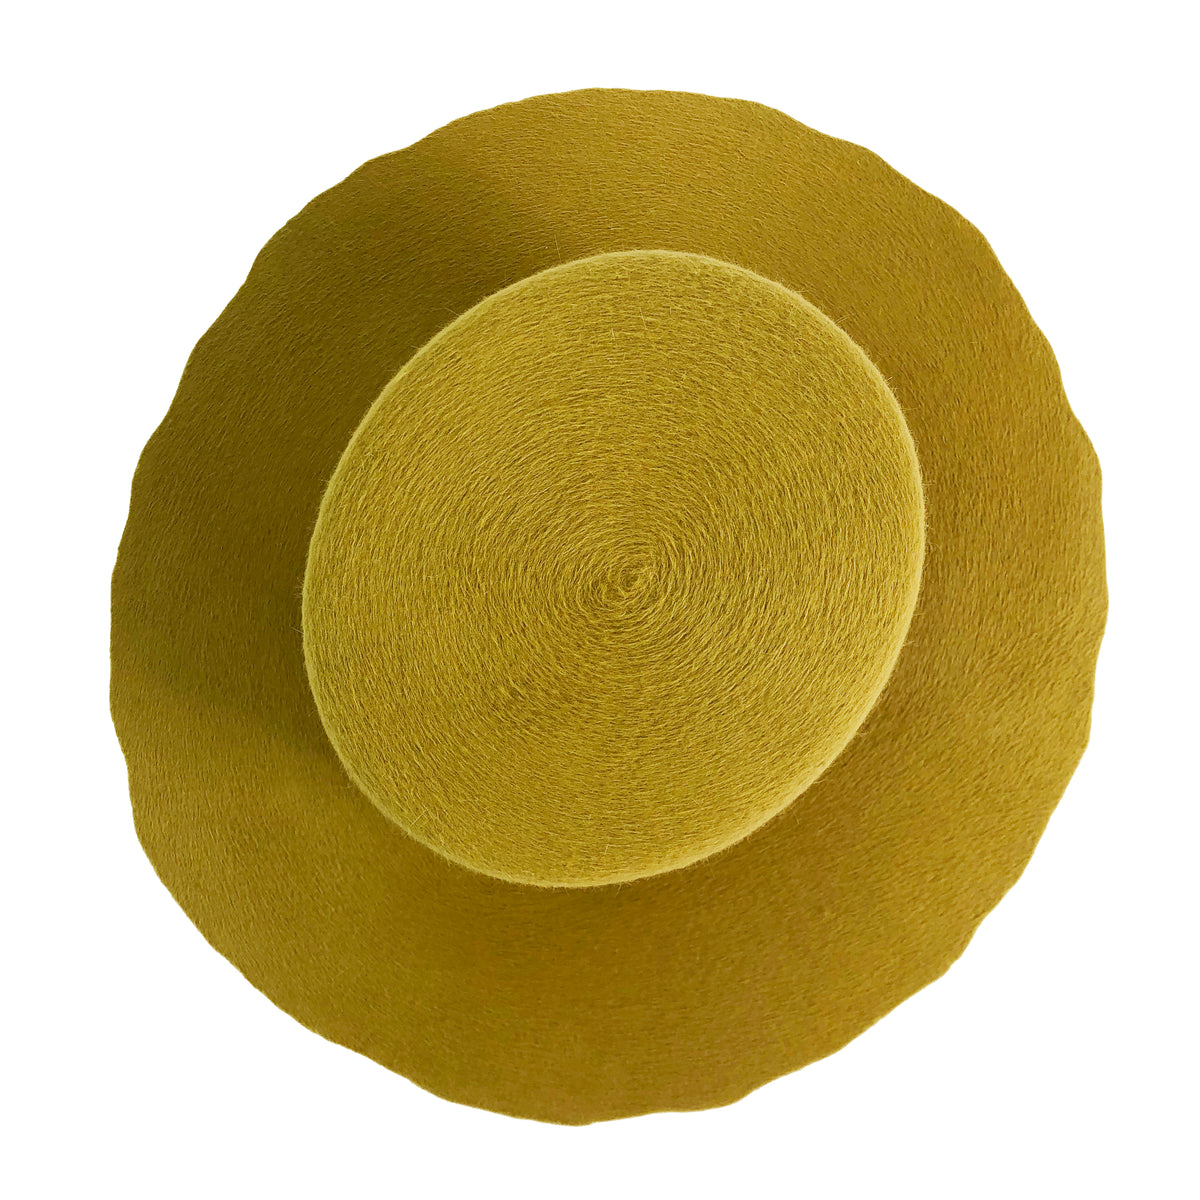 yellow hatWRKS original with uncut brim